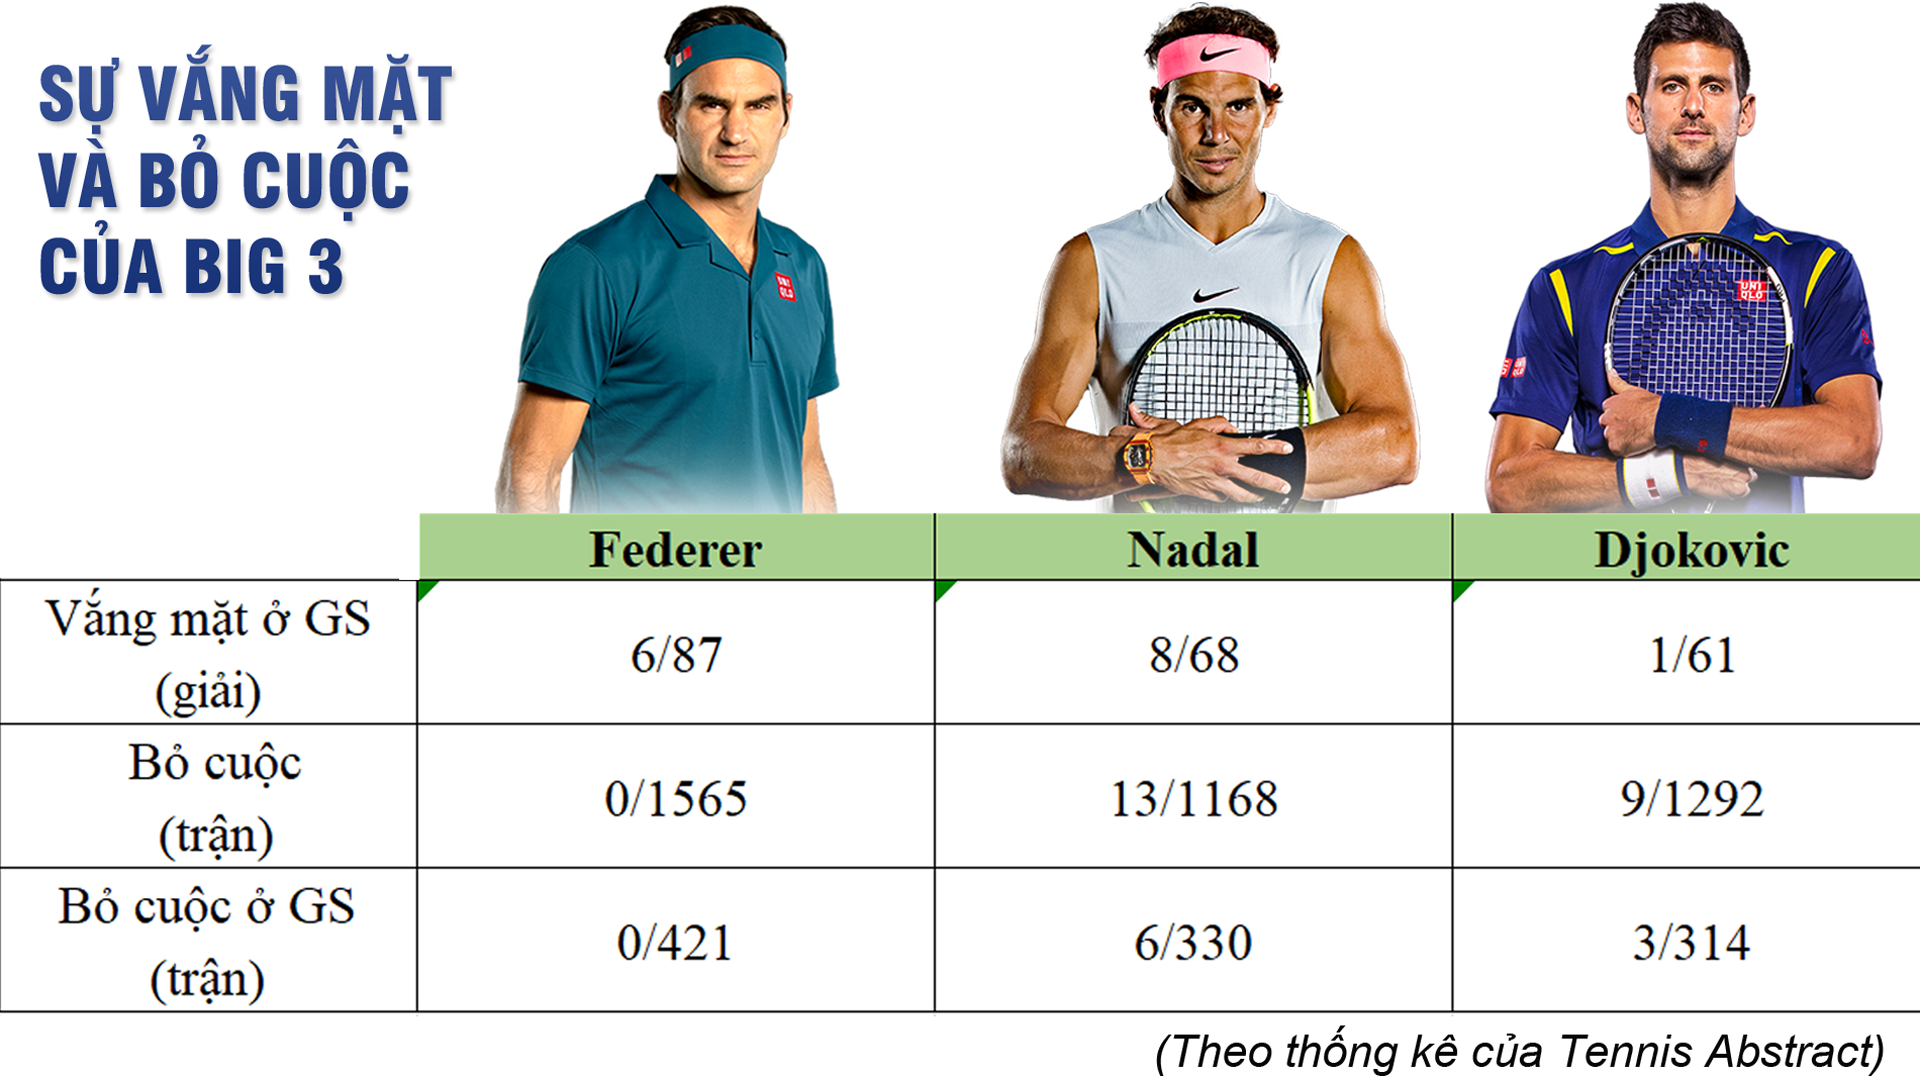 Tam vương tranh bá: Chấn thương lấy đi của Federer, Nadal, Djokovic những gì? - 12